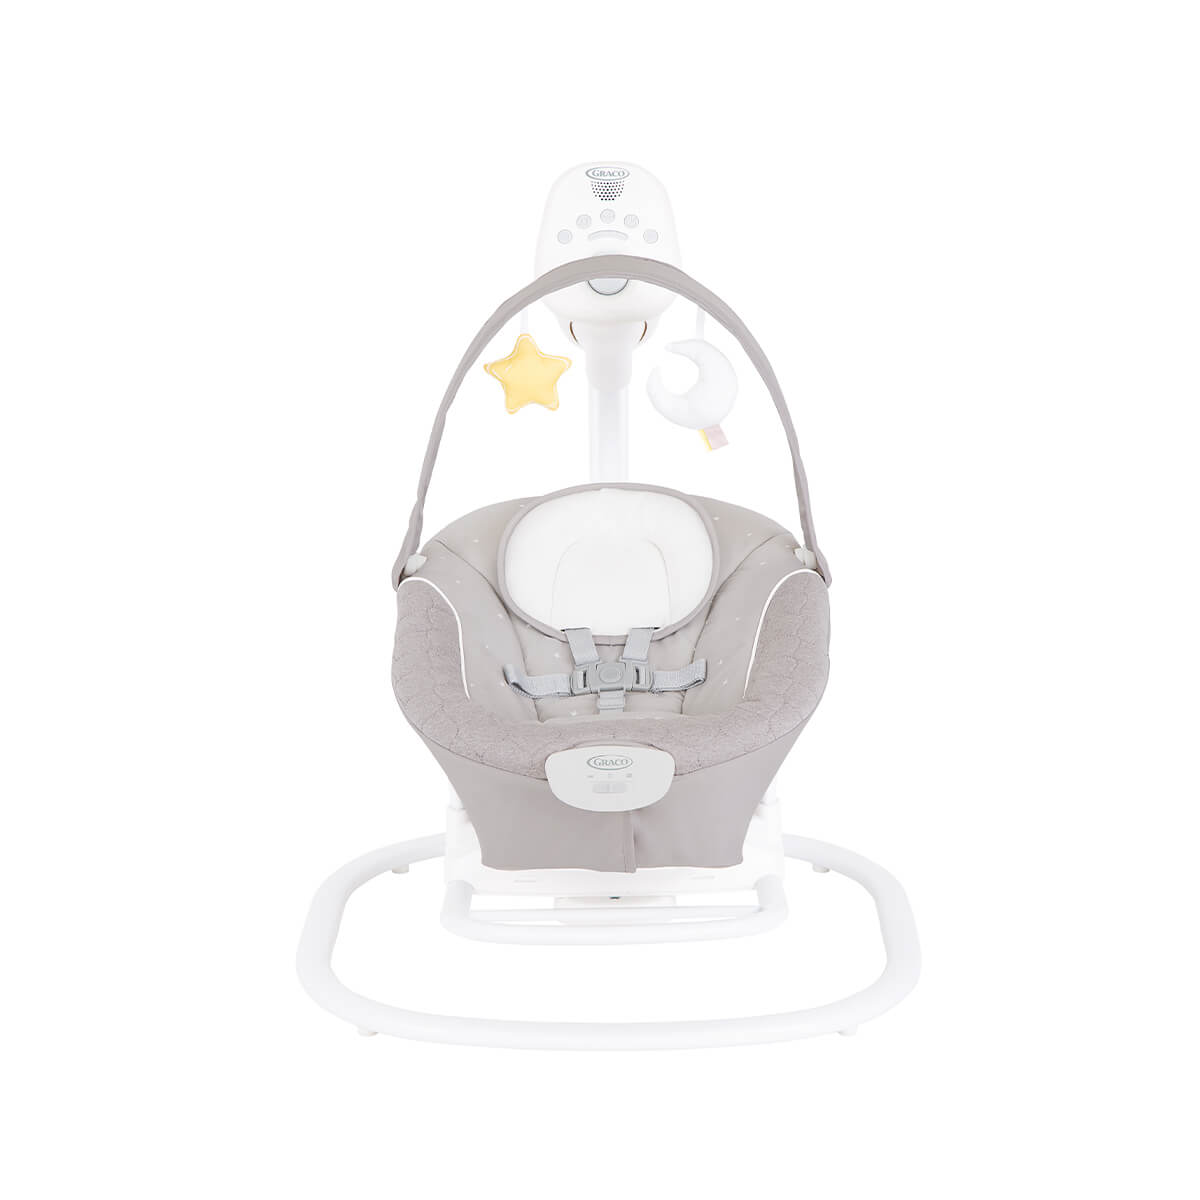 Graco® SoftSway™ elektrische Babyschaukel | schaukelt leise und geschmeidig  | Graco Baby Deutschland | Baby-Wippen